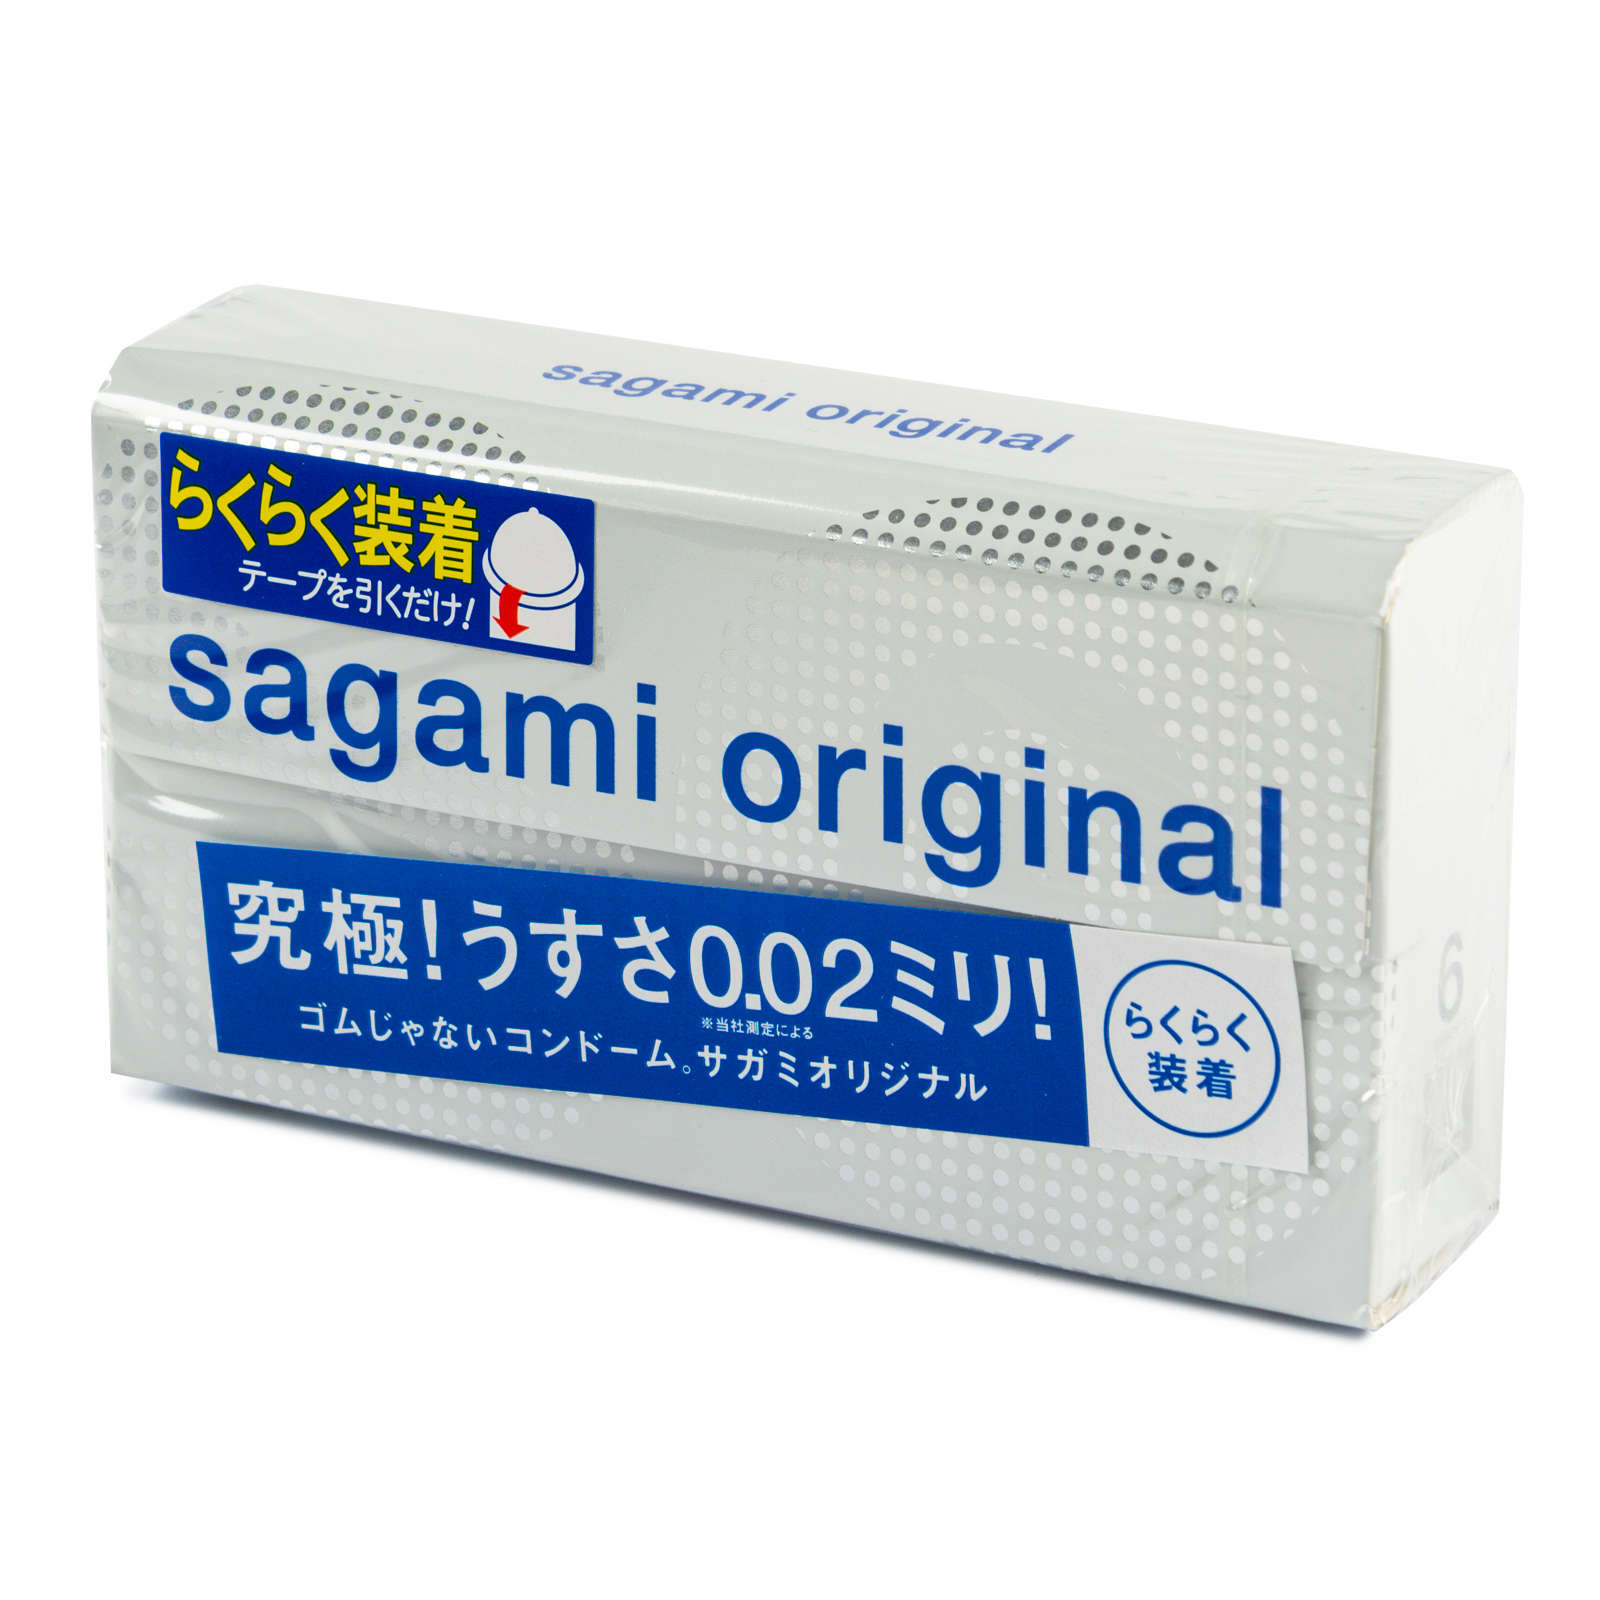 Sagami полиуретановые презервативы Original 002 Quick, 6 шт